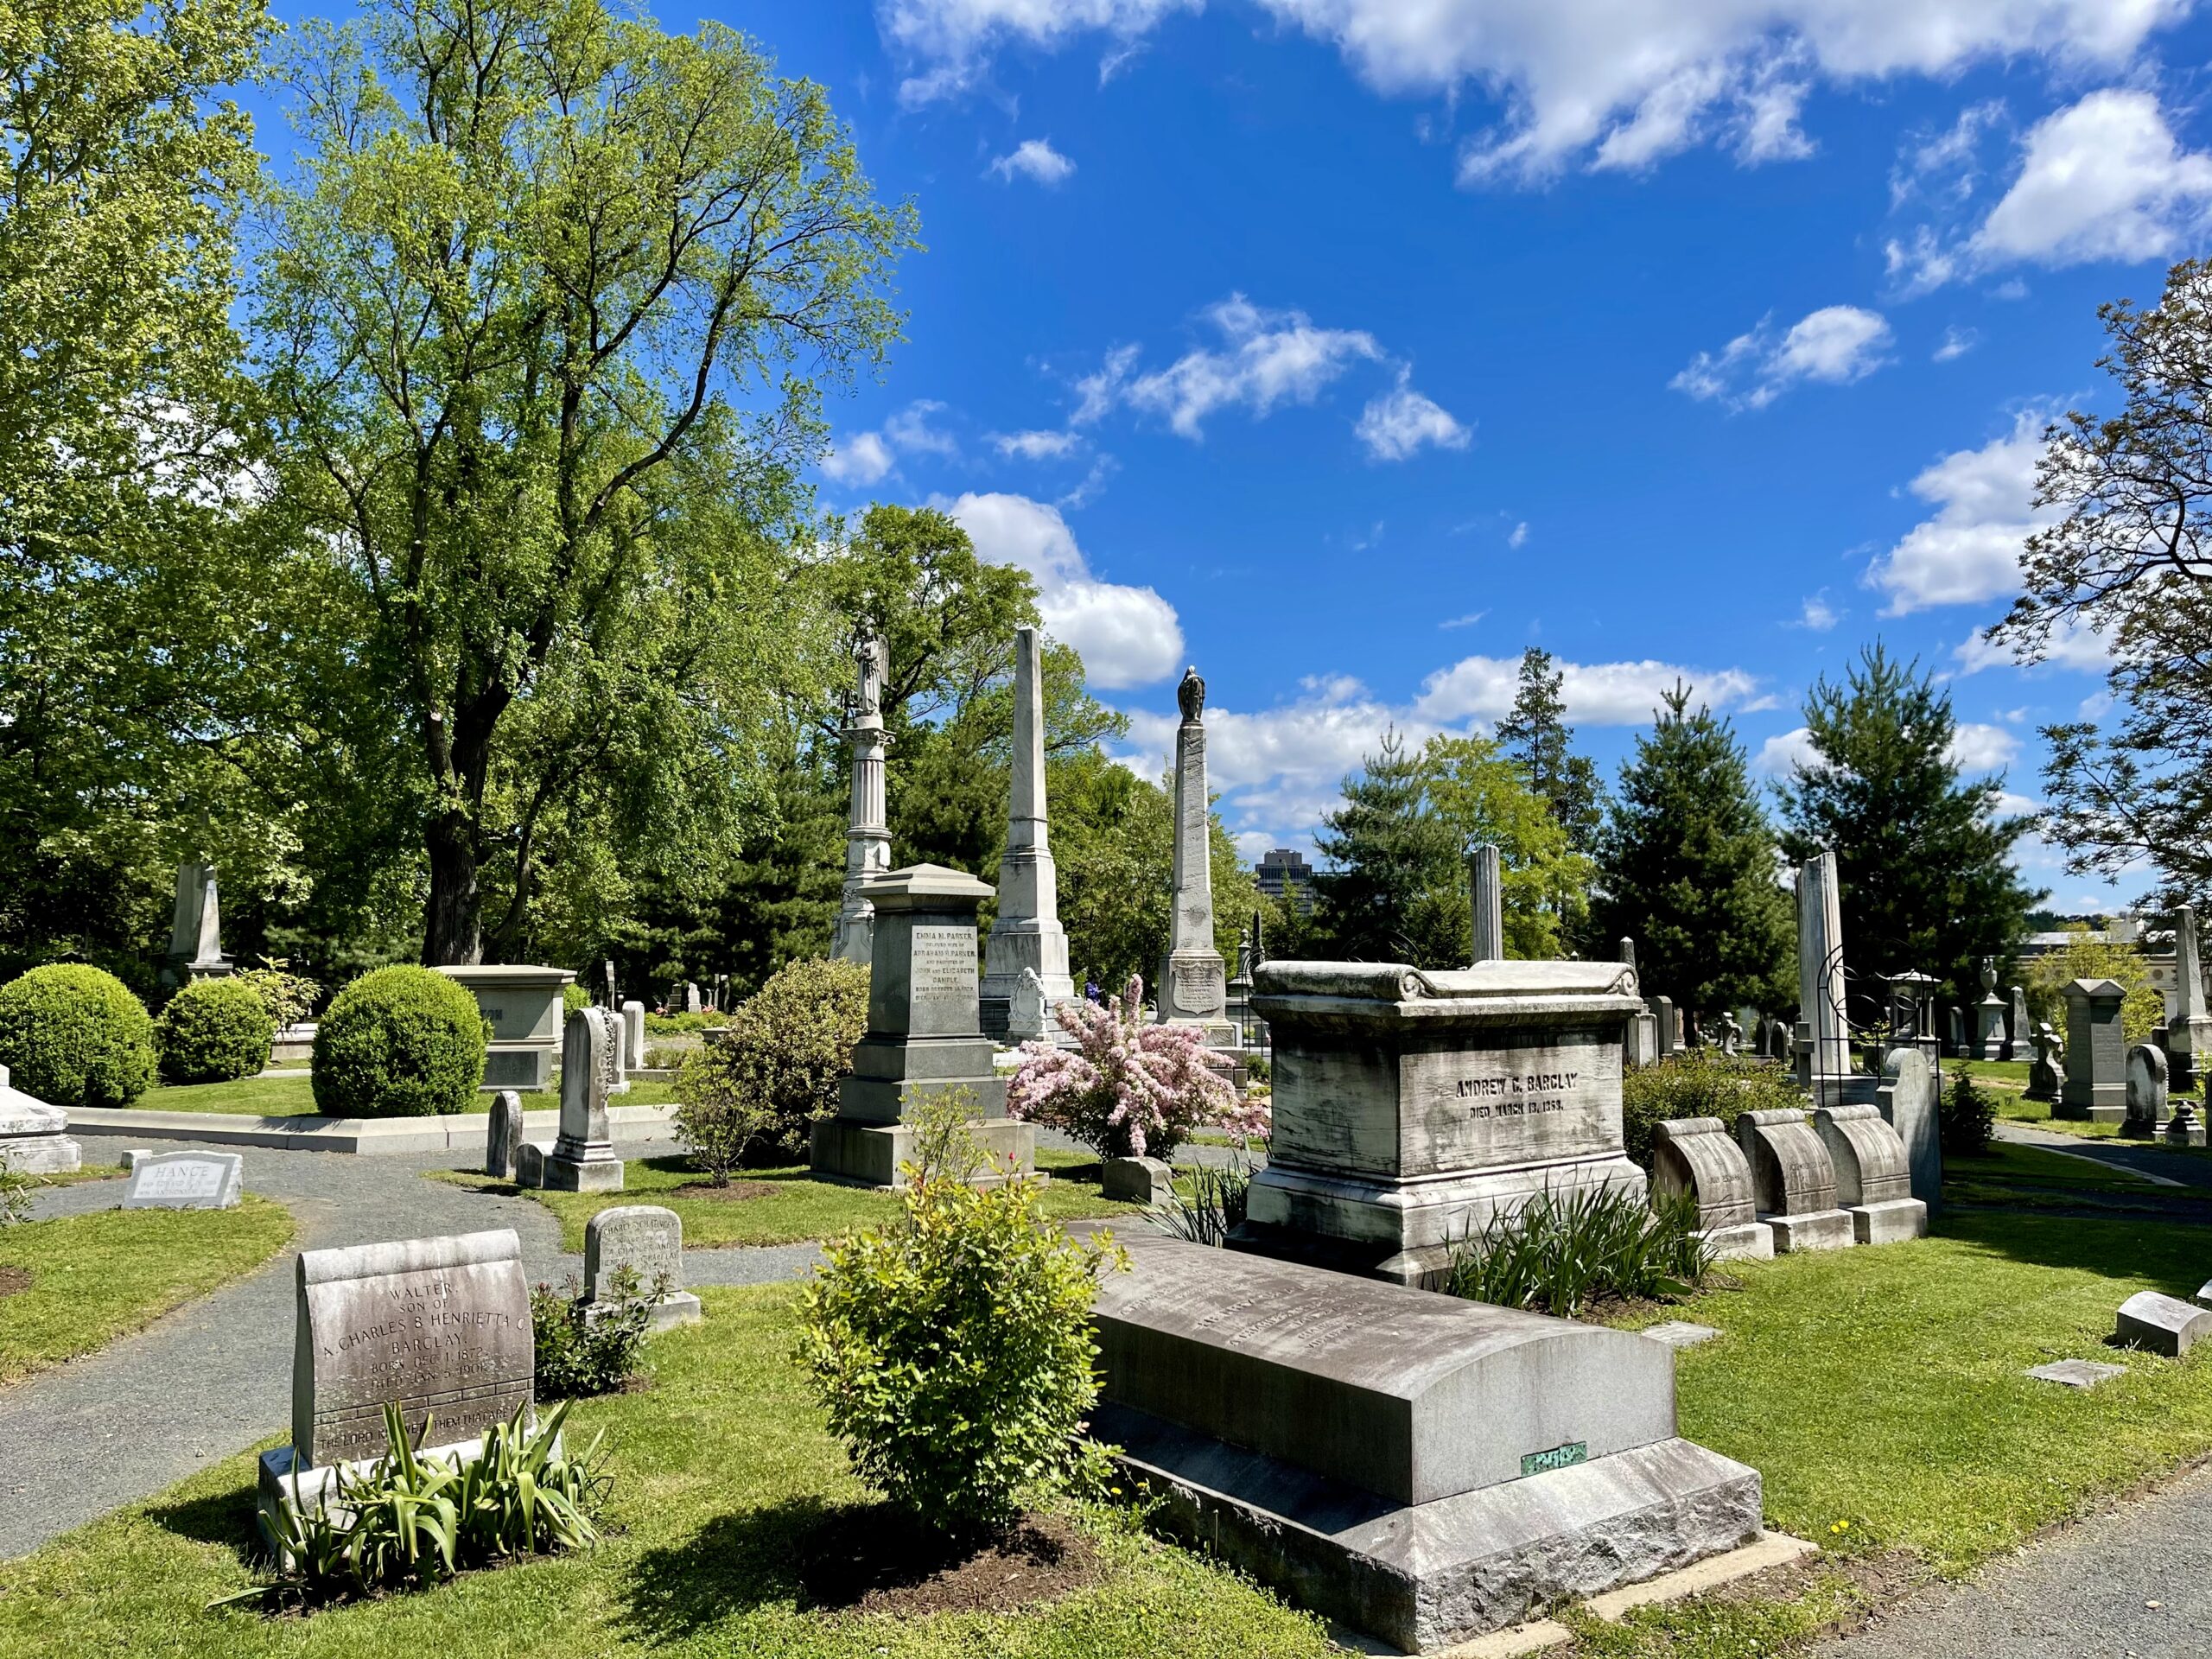 Laurel Hill Cemetery - Association for Public Art